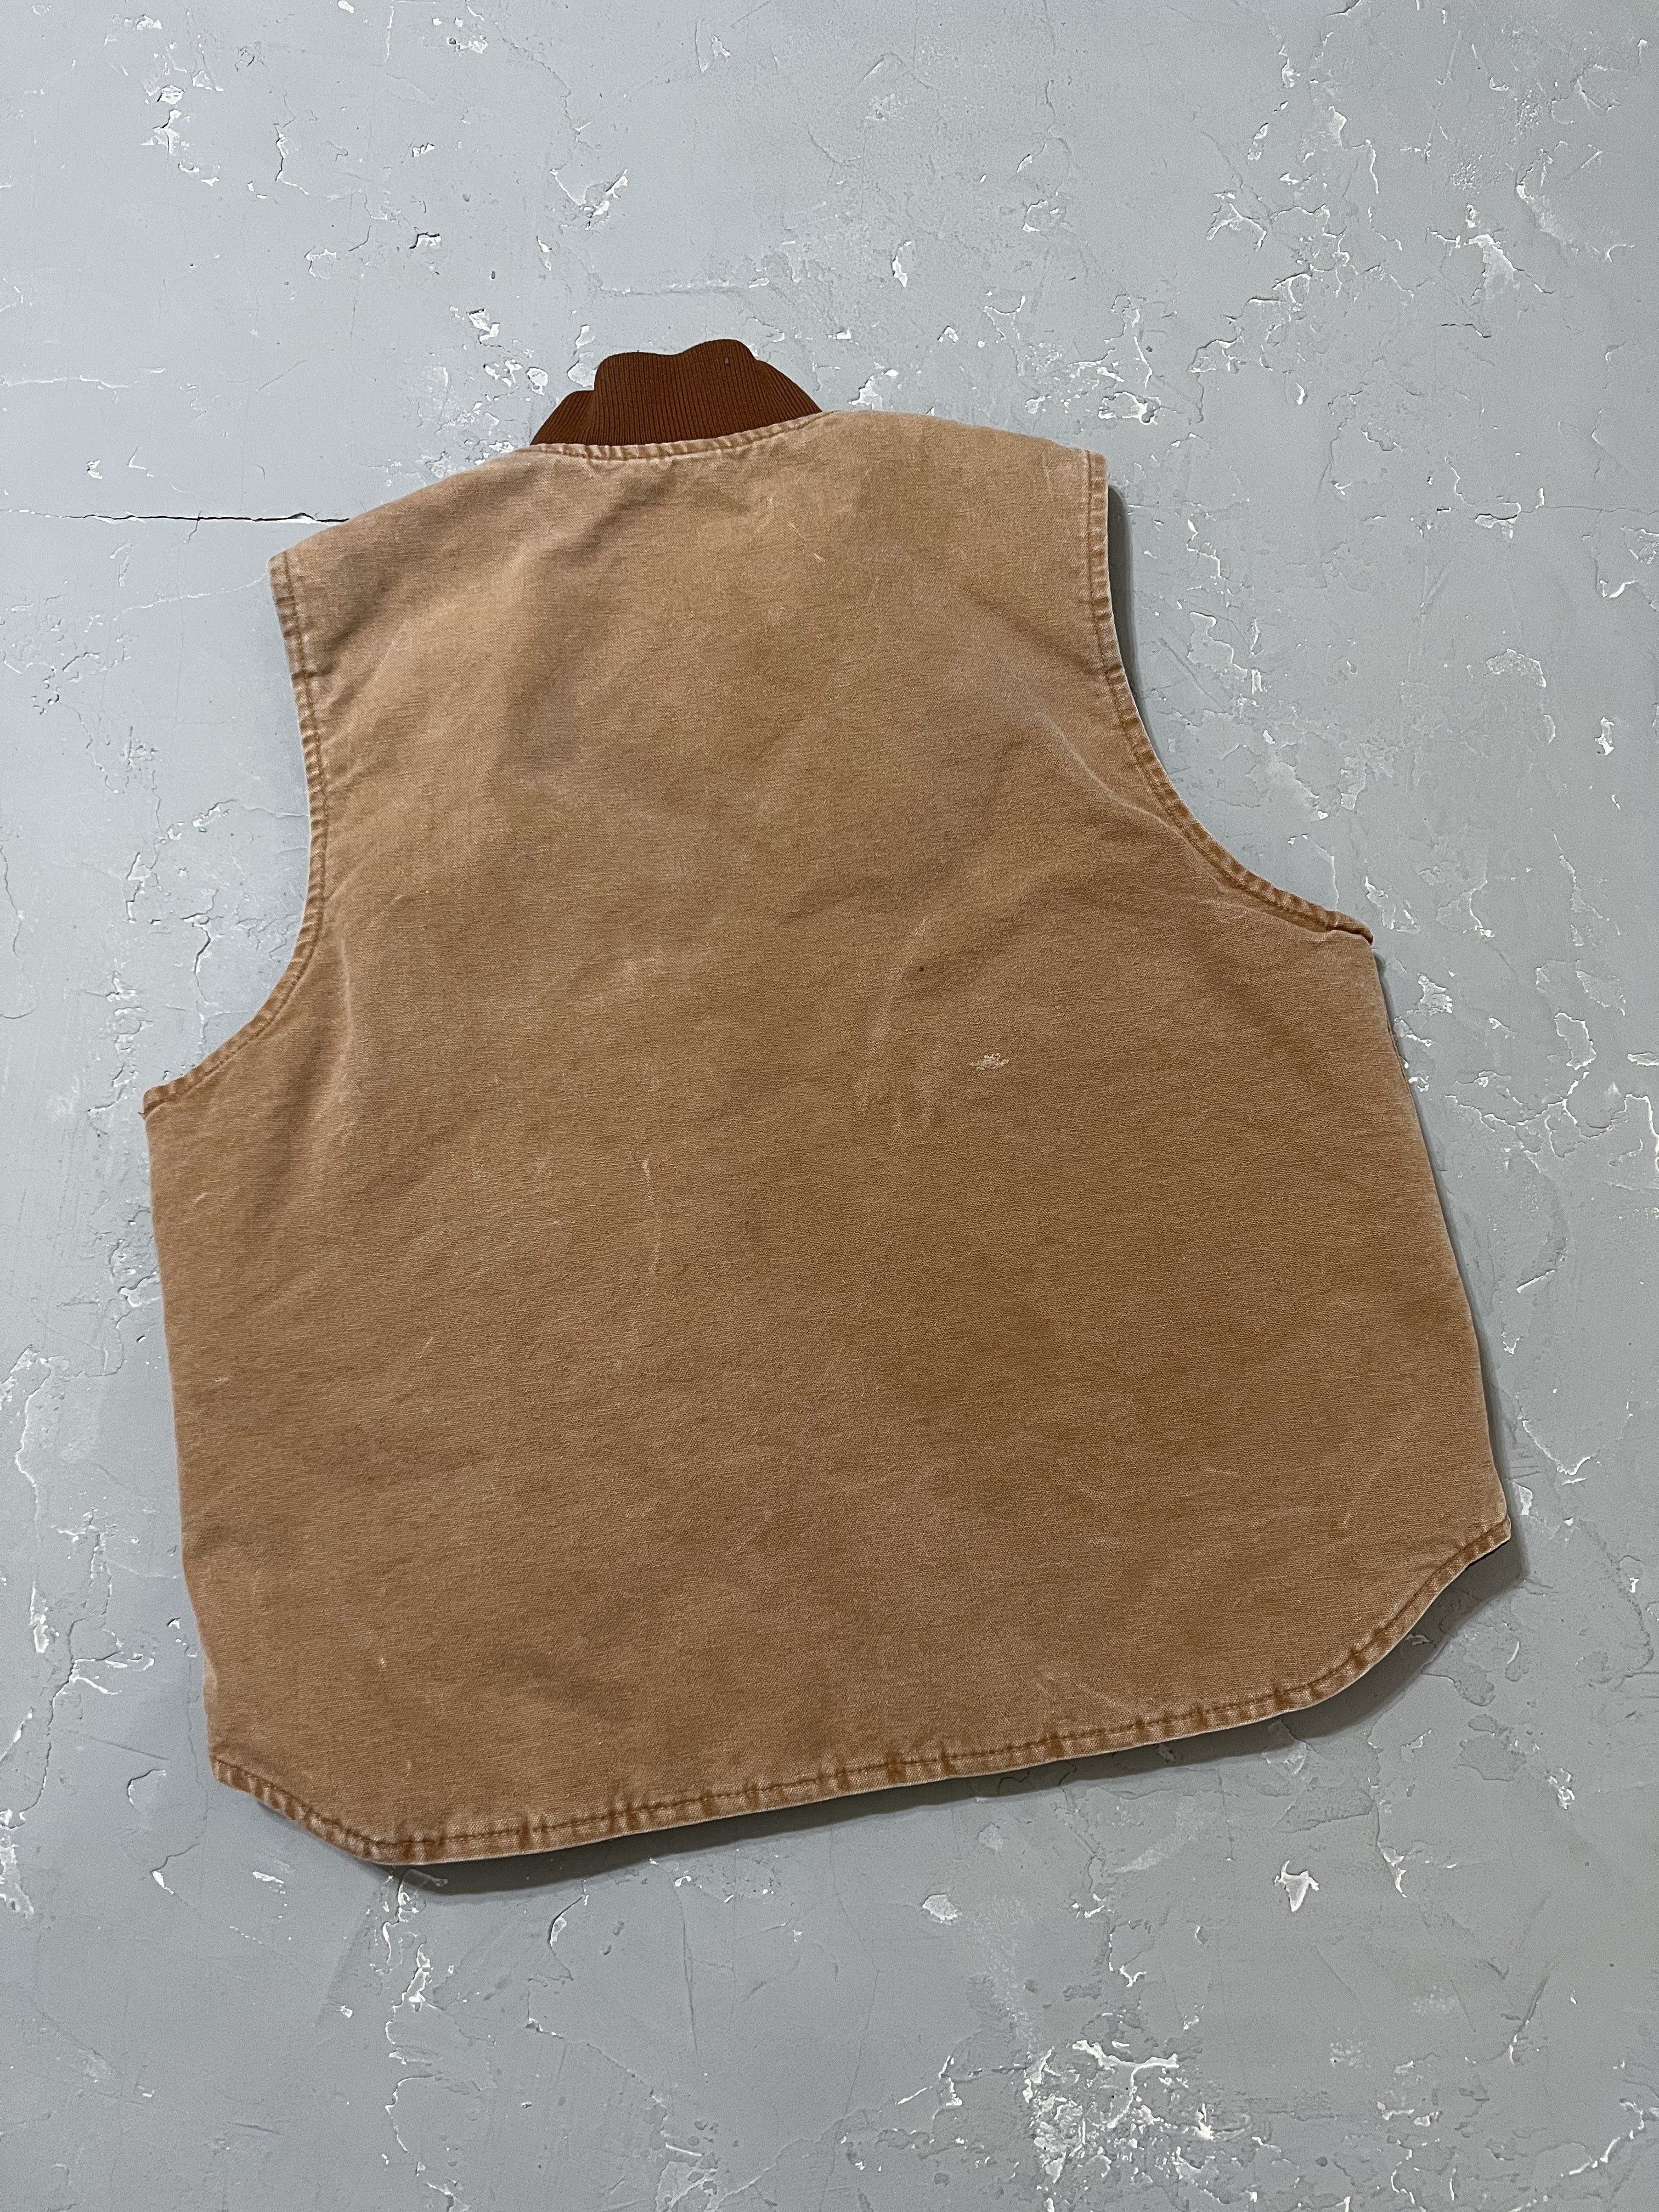 Carhartt Tan Work Vest [L]